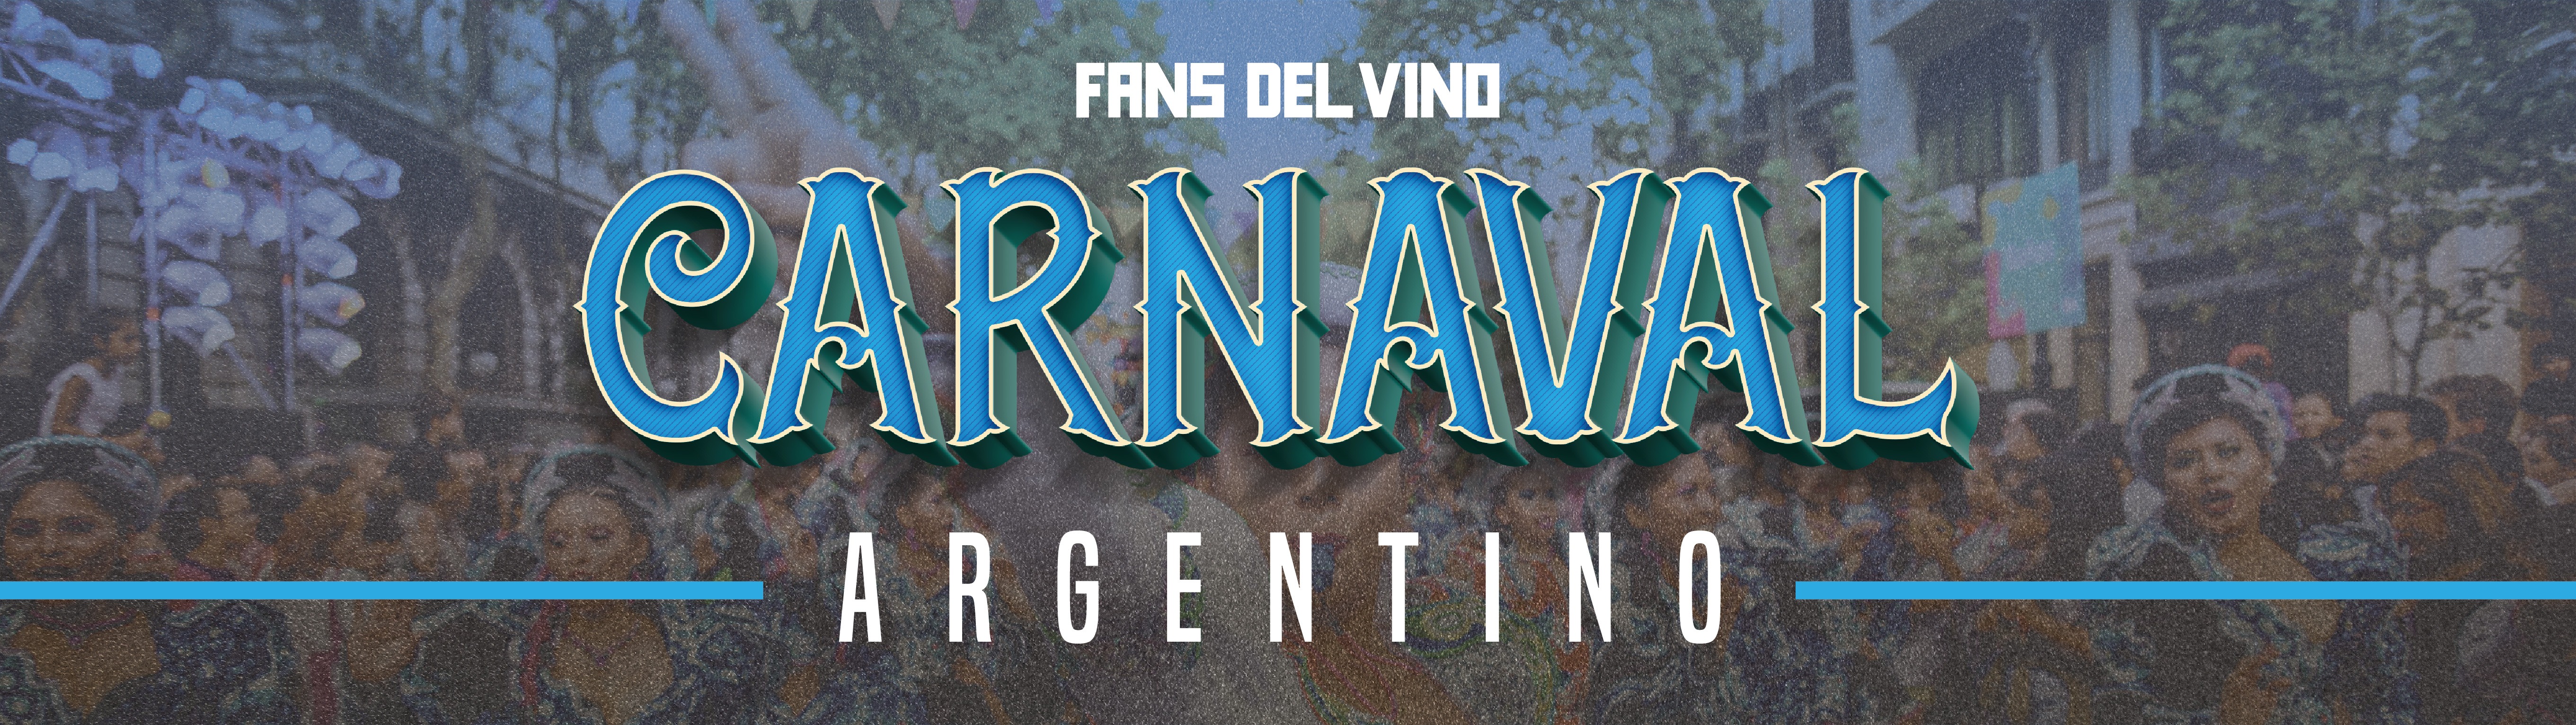 El origen y la importancia del vino en el Carnaval de Argentina